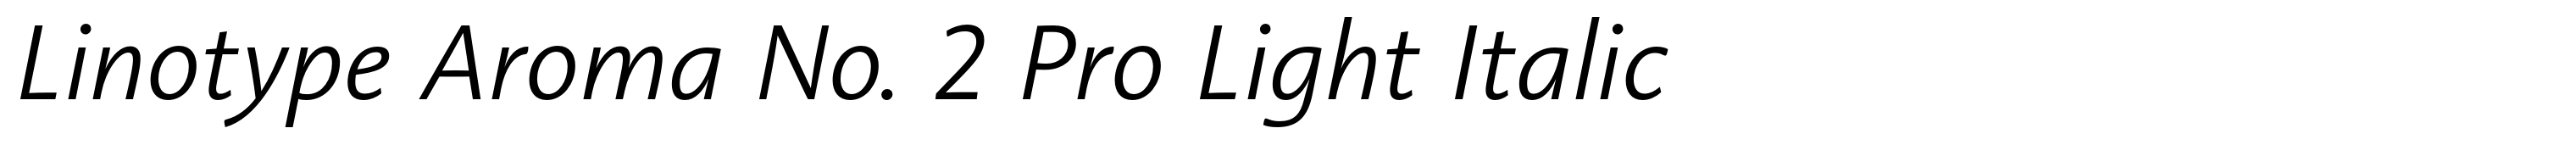 Linotype Aroma No. 2 Pro Light Italic